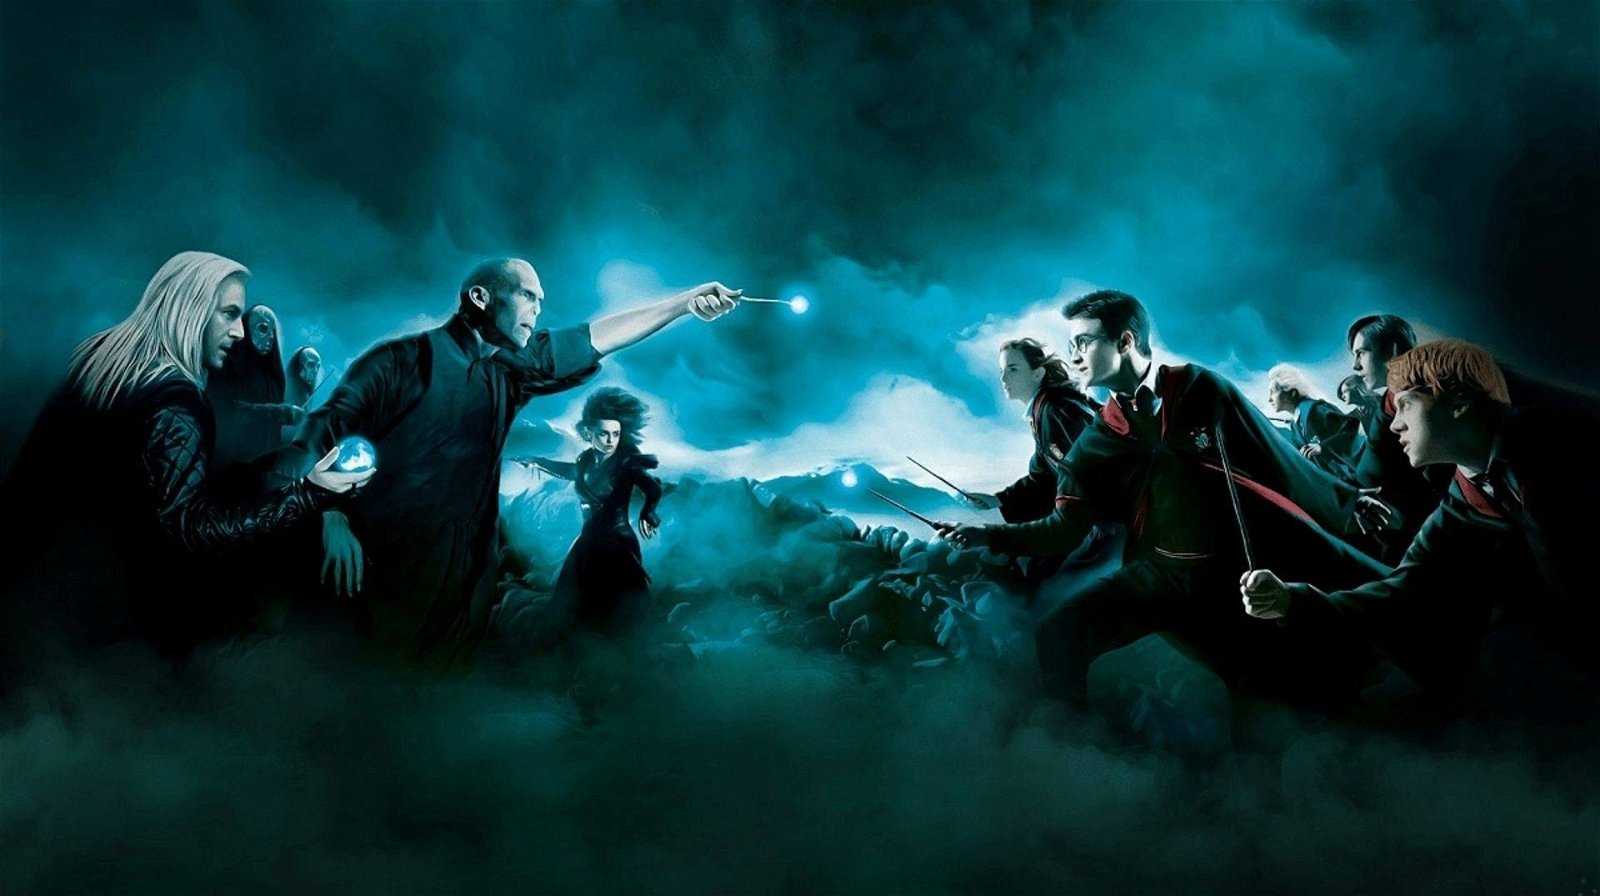 Immagine di Harry Potter: il gioco RPG è in arrivo secondo molti insider noti